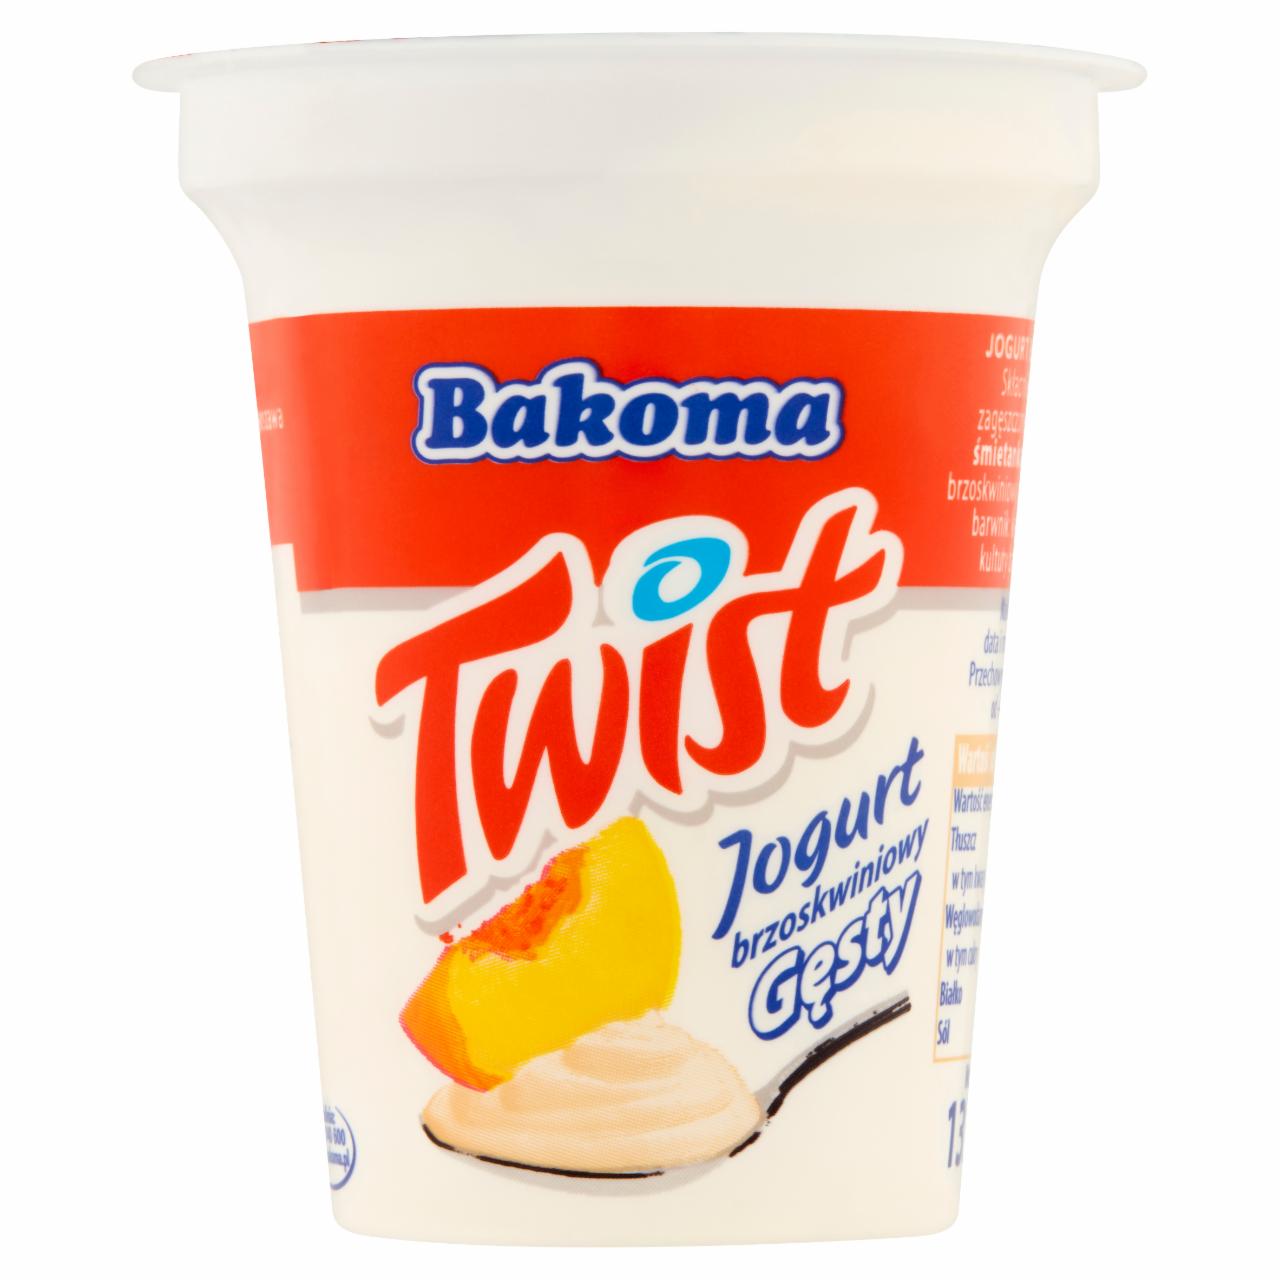 Zdjęcia - Bakoma Twist Jogurt brzoskwiniowy gęsty 135 g